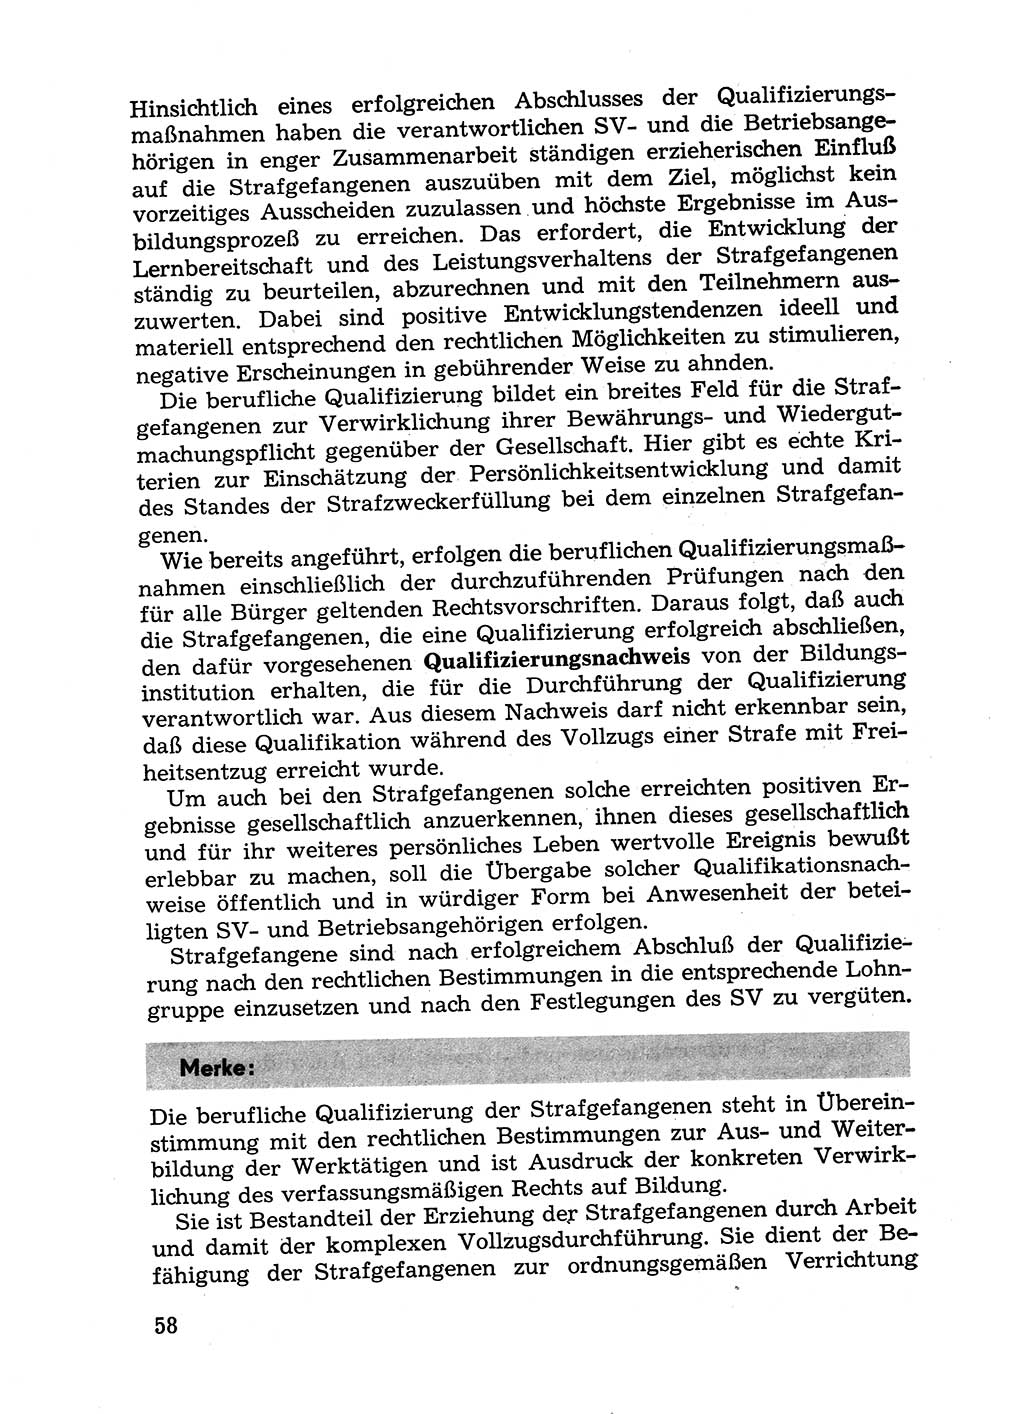 Handbuch für Betriebsangehörige, Abteilung Strafvollzug (SV) [Ministerium des Innern (MdI) Deutsche Demokratische Republik (DDR)] 1981, Seite 58 (Hb. BA Abt. SV MdI DDR 1981, S. 58)